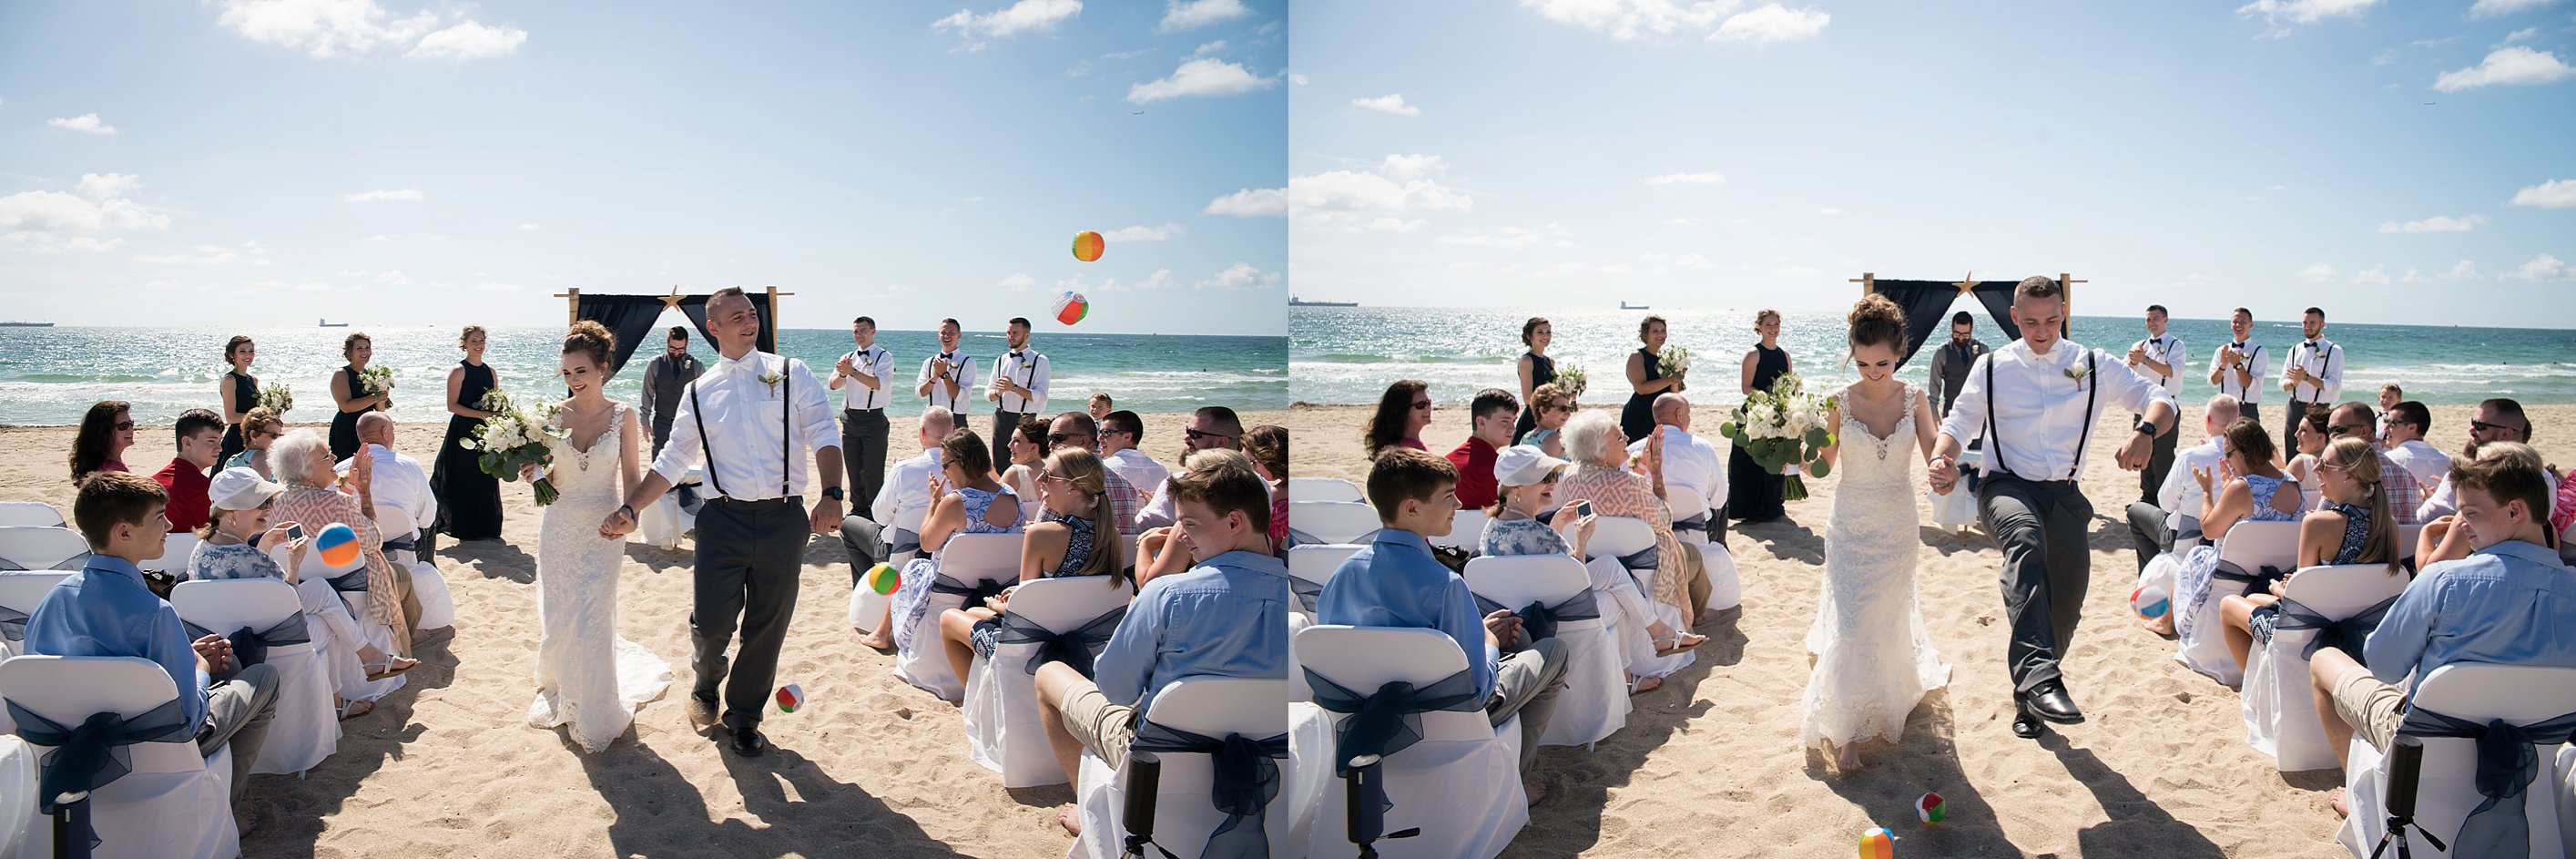 Fun beach wedding photos